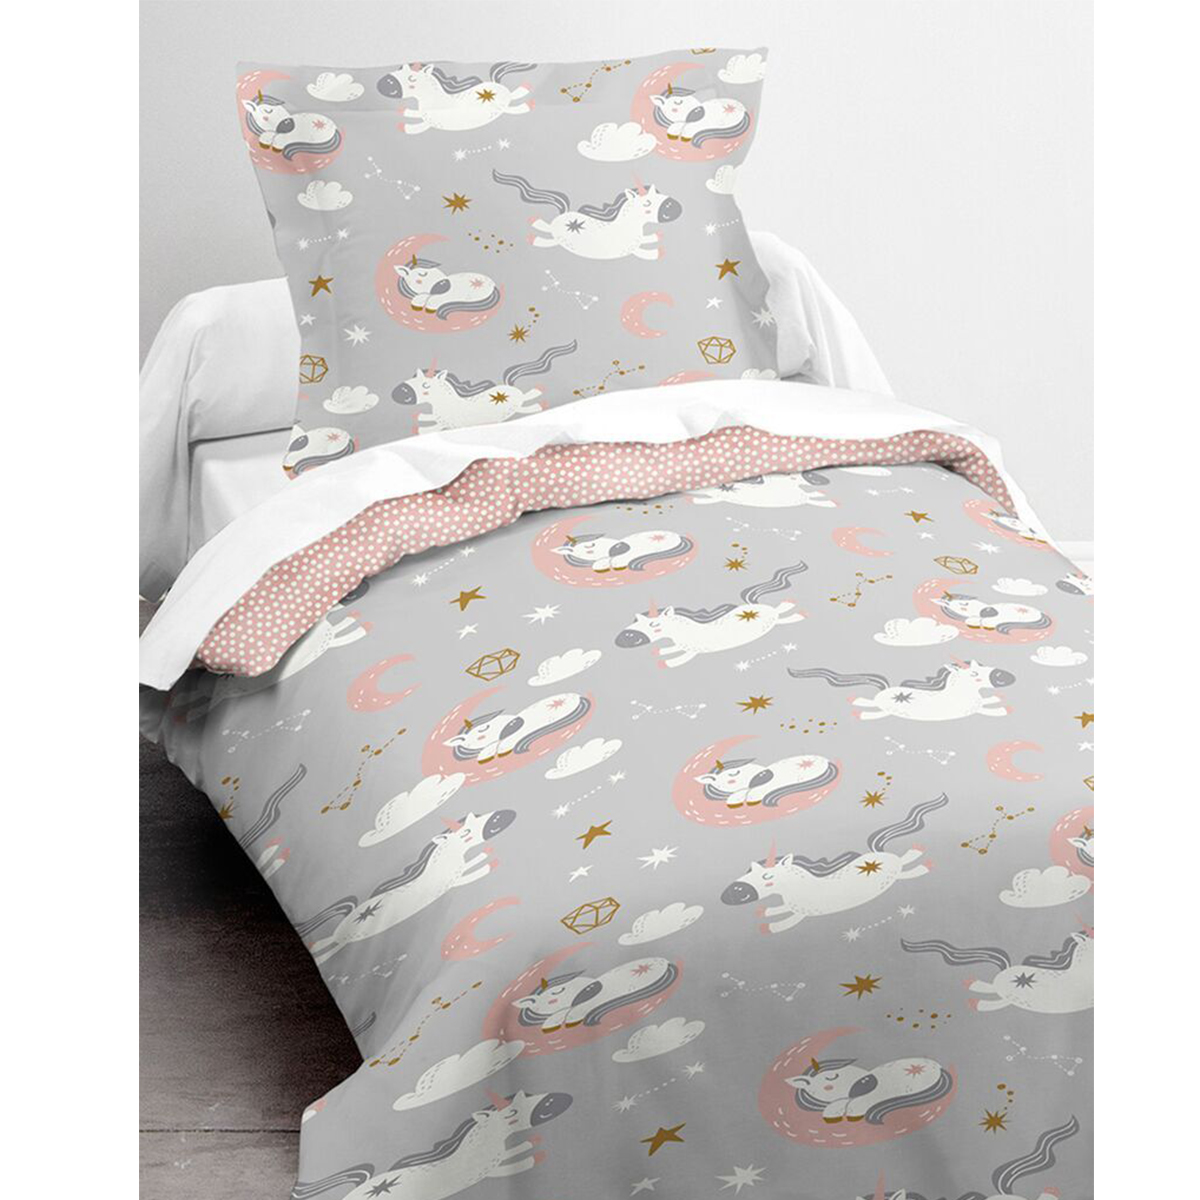 Unicorn Bedclothes 140 x 200 cm